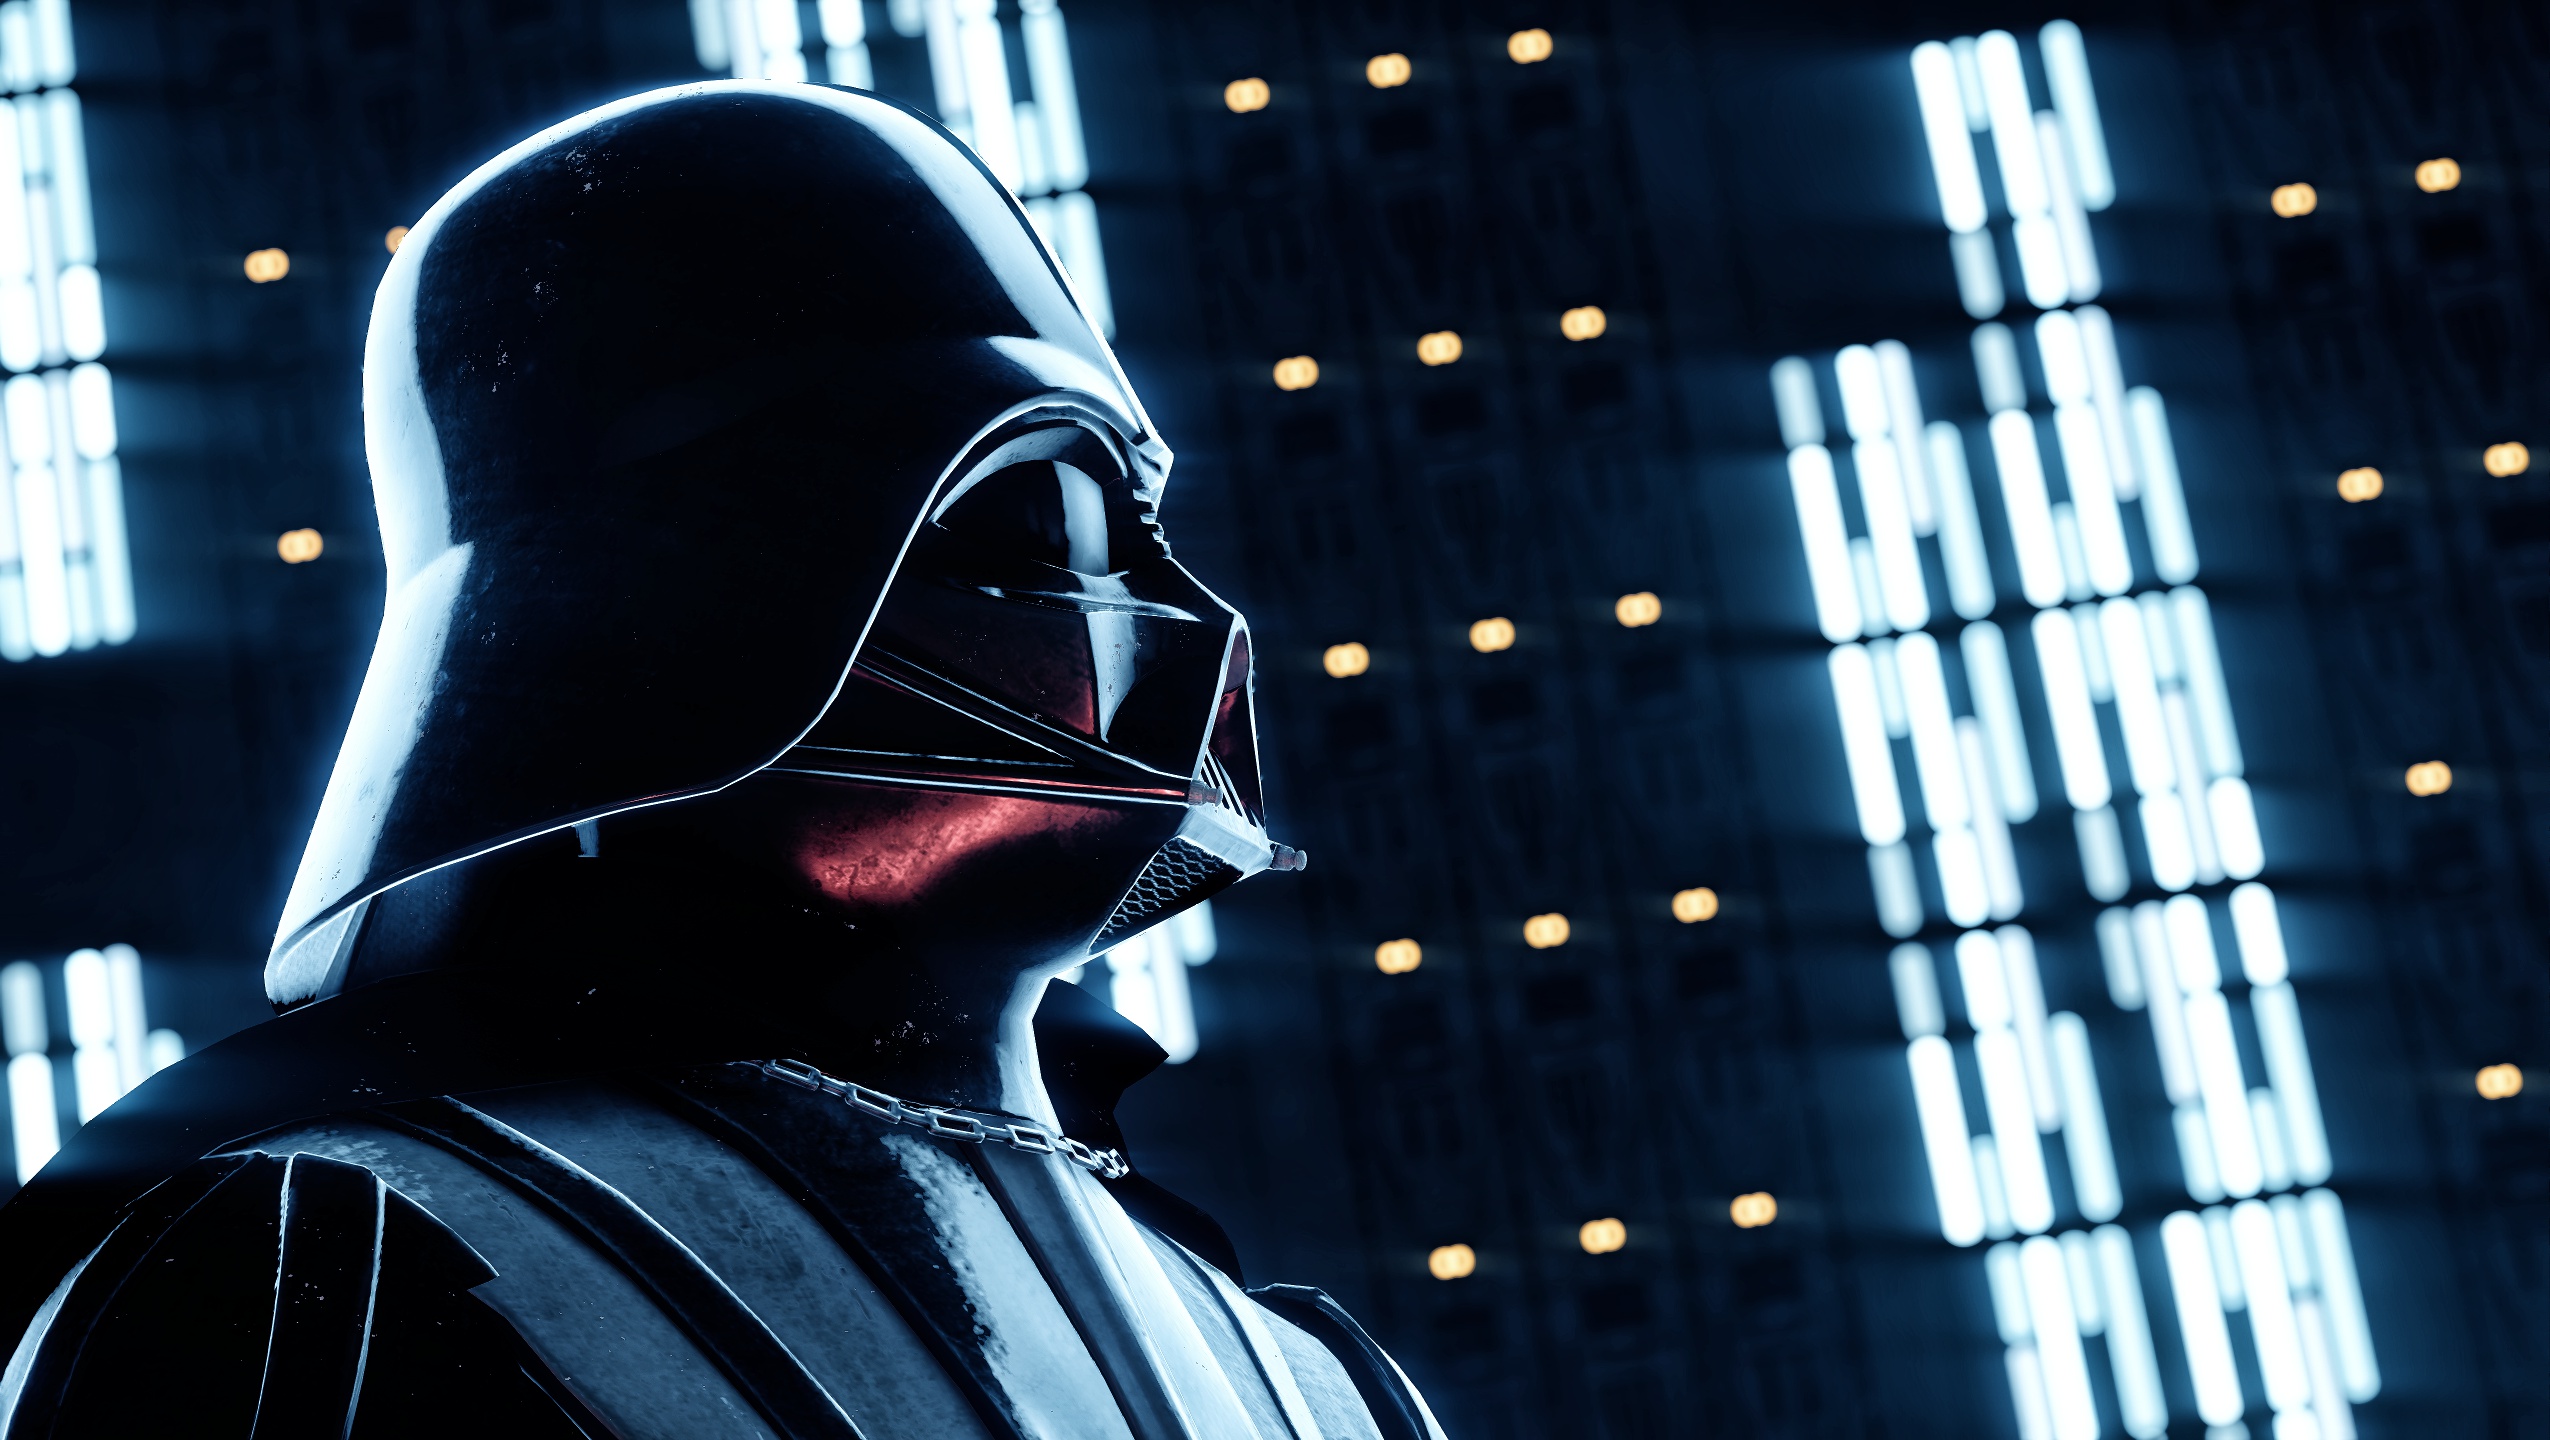 General 2550x1440 Star Wars Star Wars Battlefront II video games Darth Vader Sith Star Wars Villains